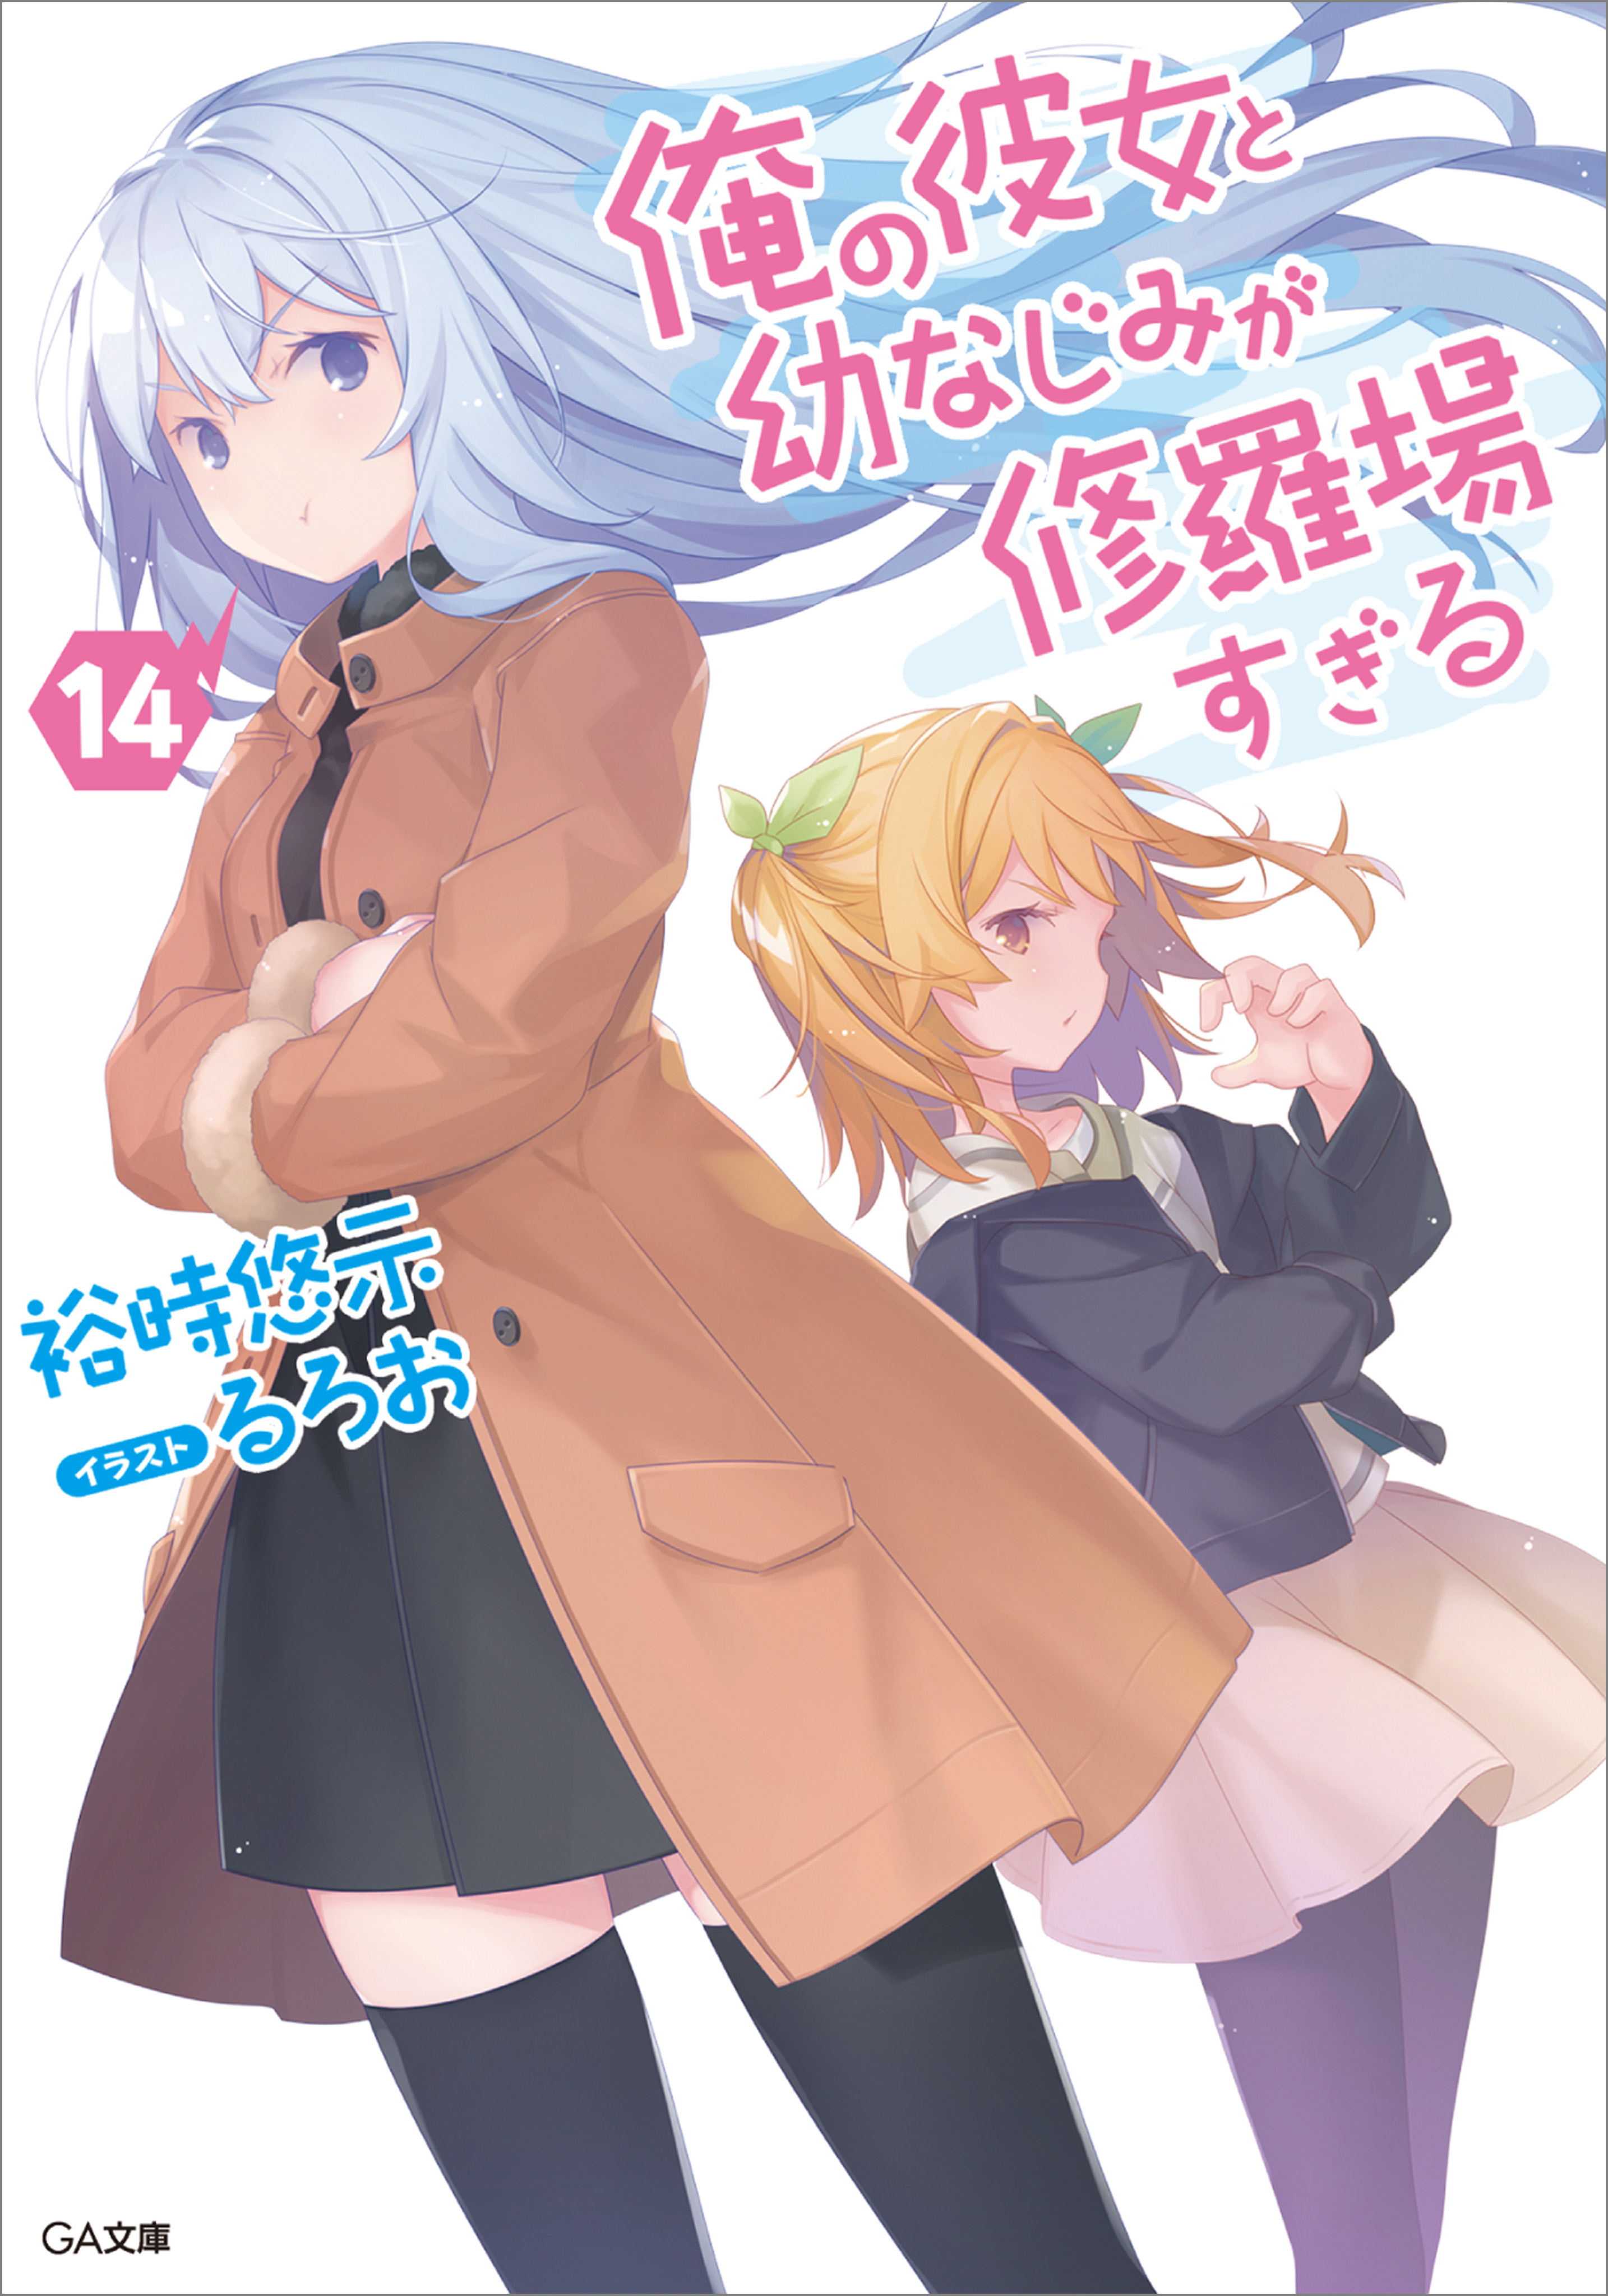 JAPAN manga: Oreshura / Ore no Kanojo to Osananajimi ga Shuraba Sugiru  Complete